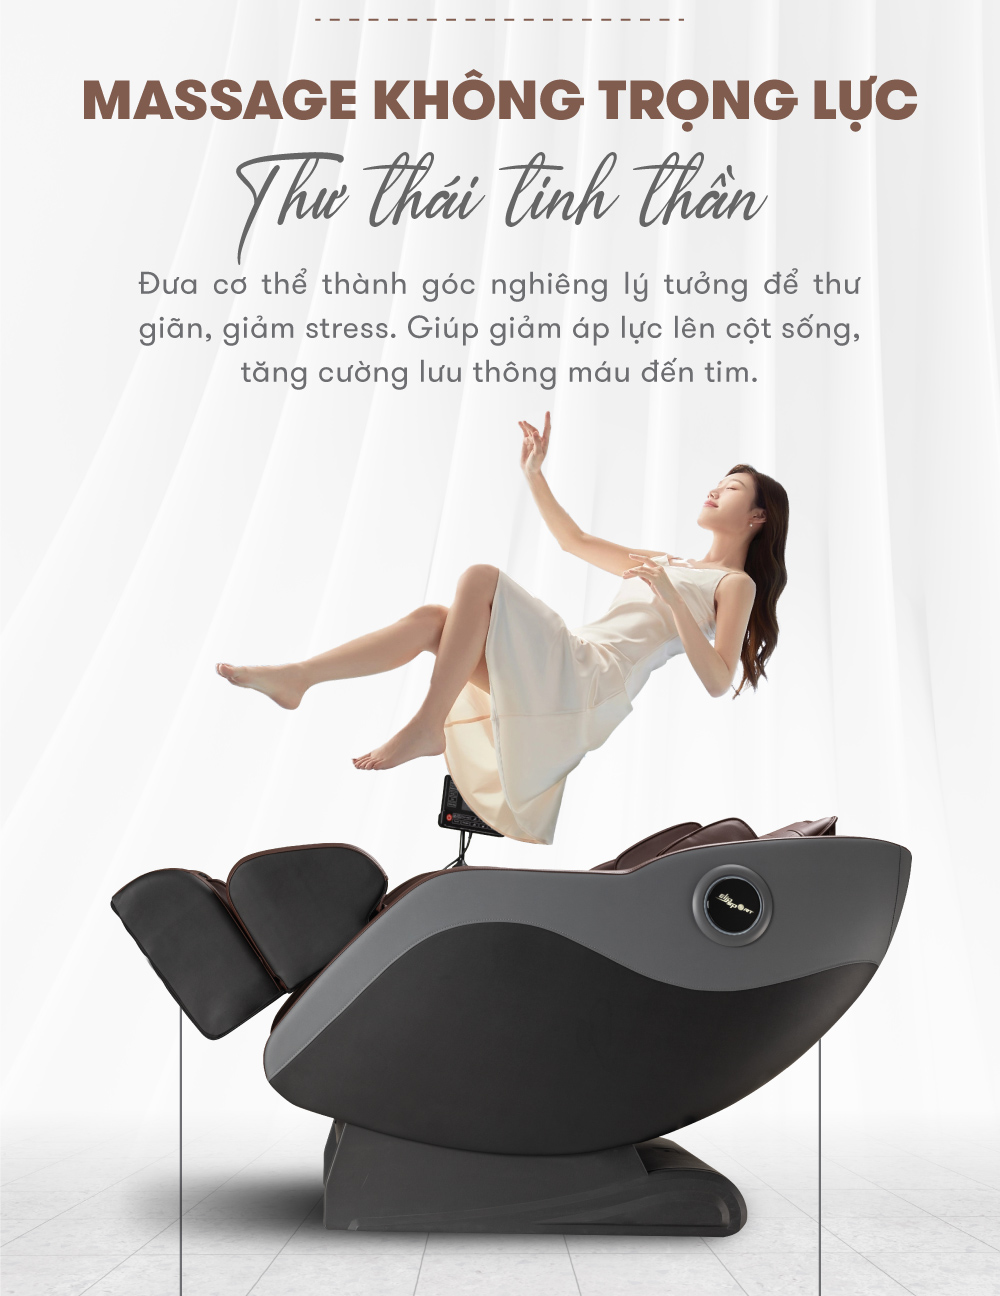 Ghế Massage ELIP E6 - Công nghệ massage 3D, Trục SL ôm sát cơ thể, 12 bài massage tự động, Massage xoa ấn huyệt gót chân